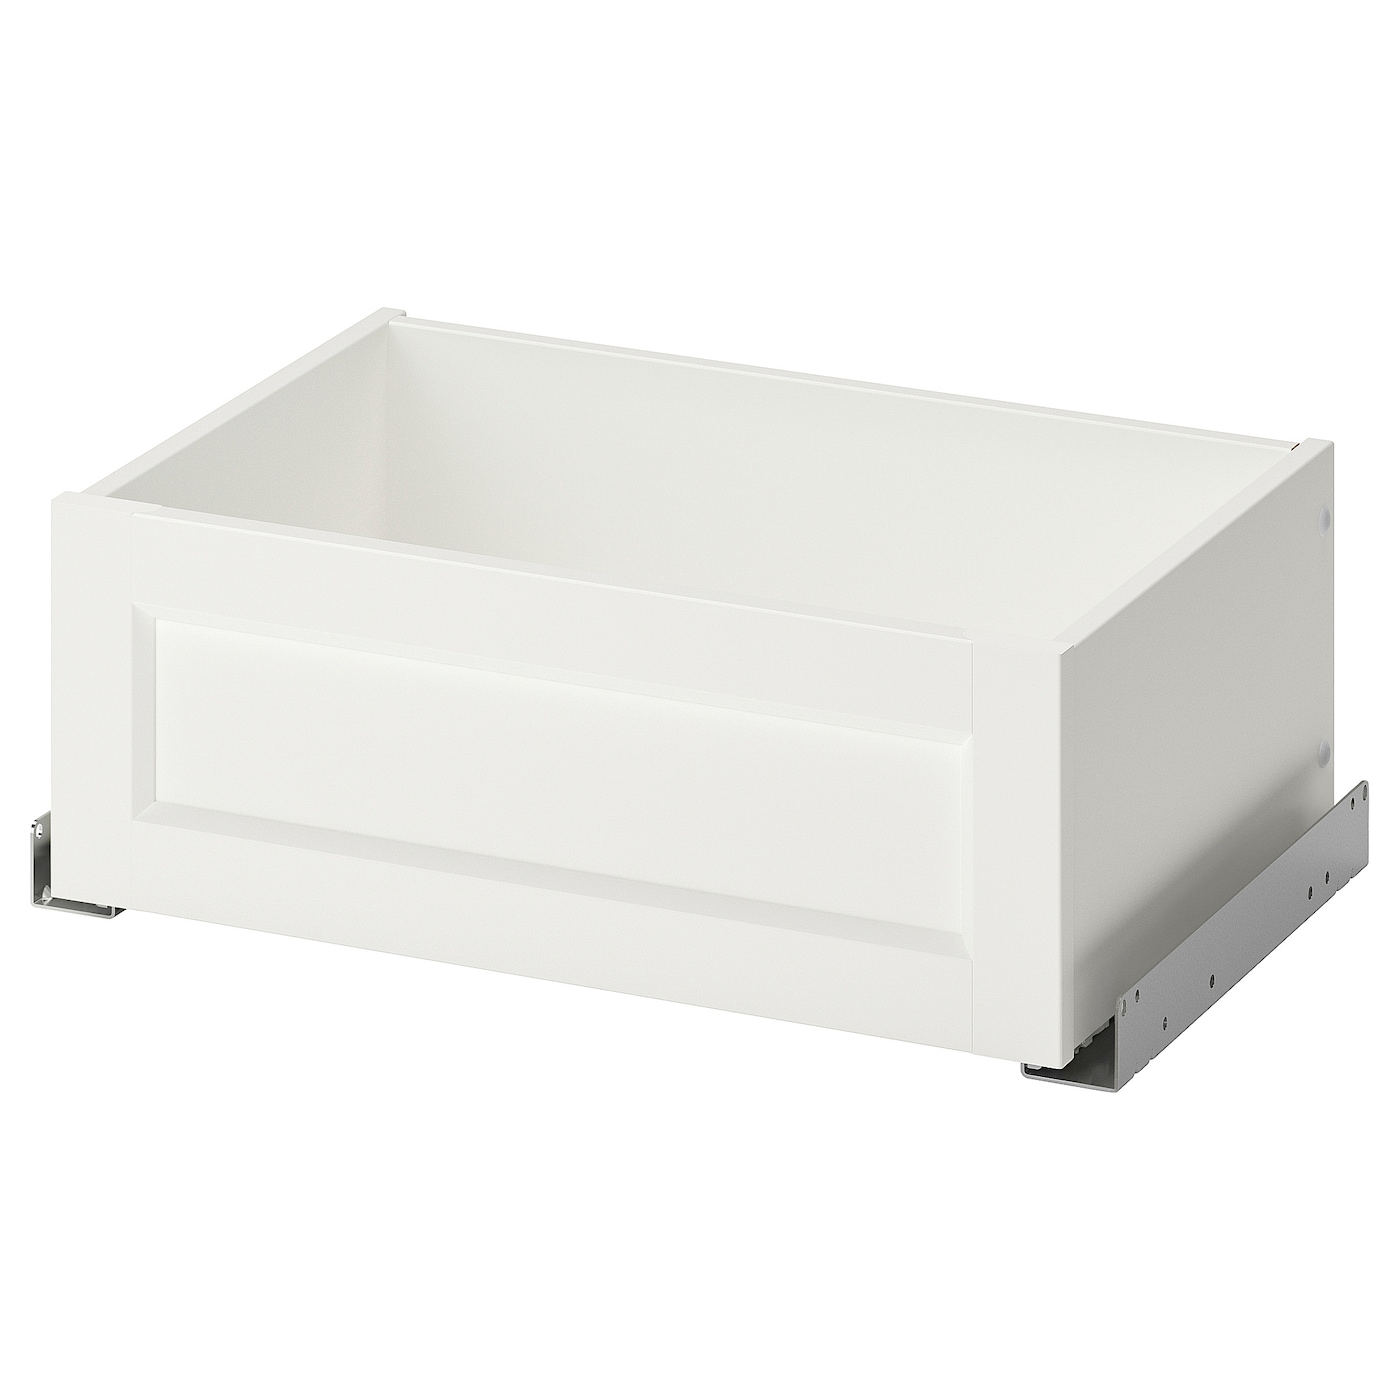 Ящик с фронтальной панелью - IKEA KOMPLEMENT, 50x35 см, белый КОМПЛИМЕНТ ИКЕА